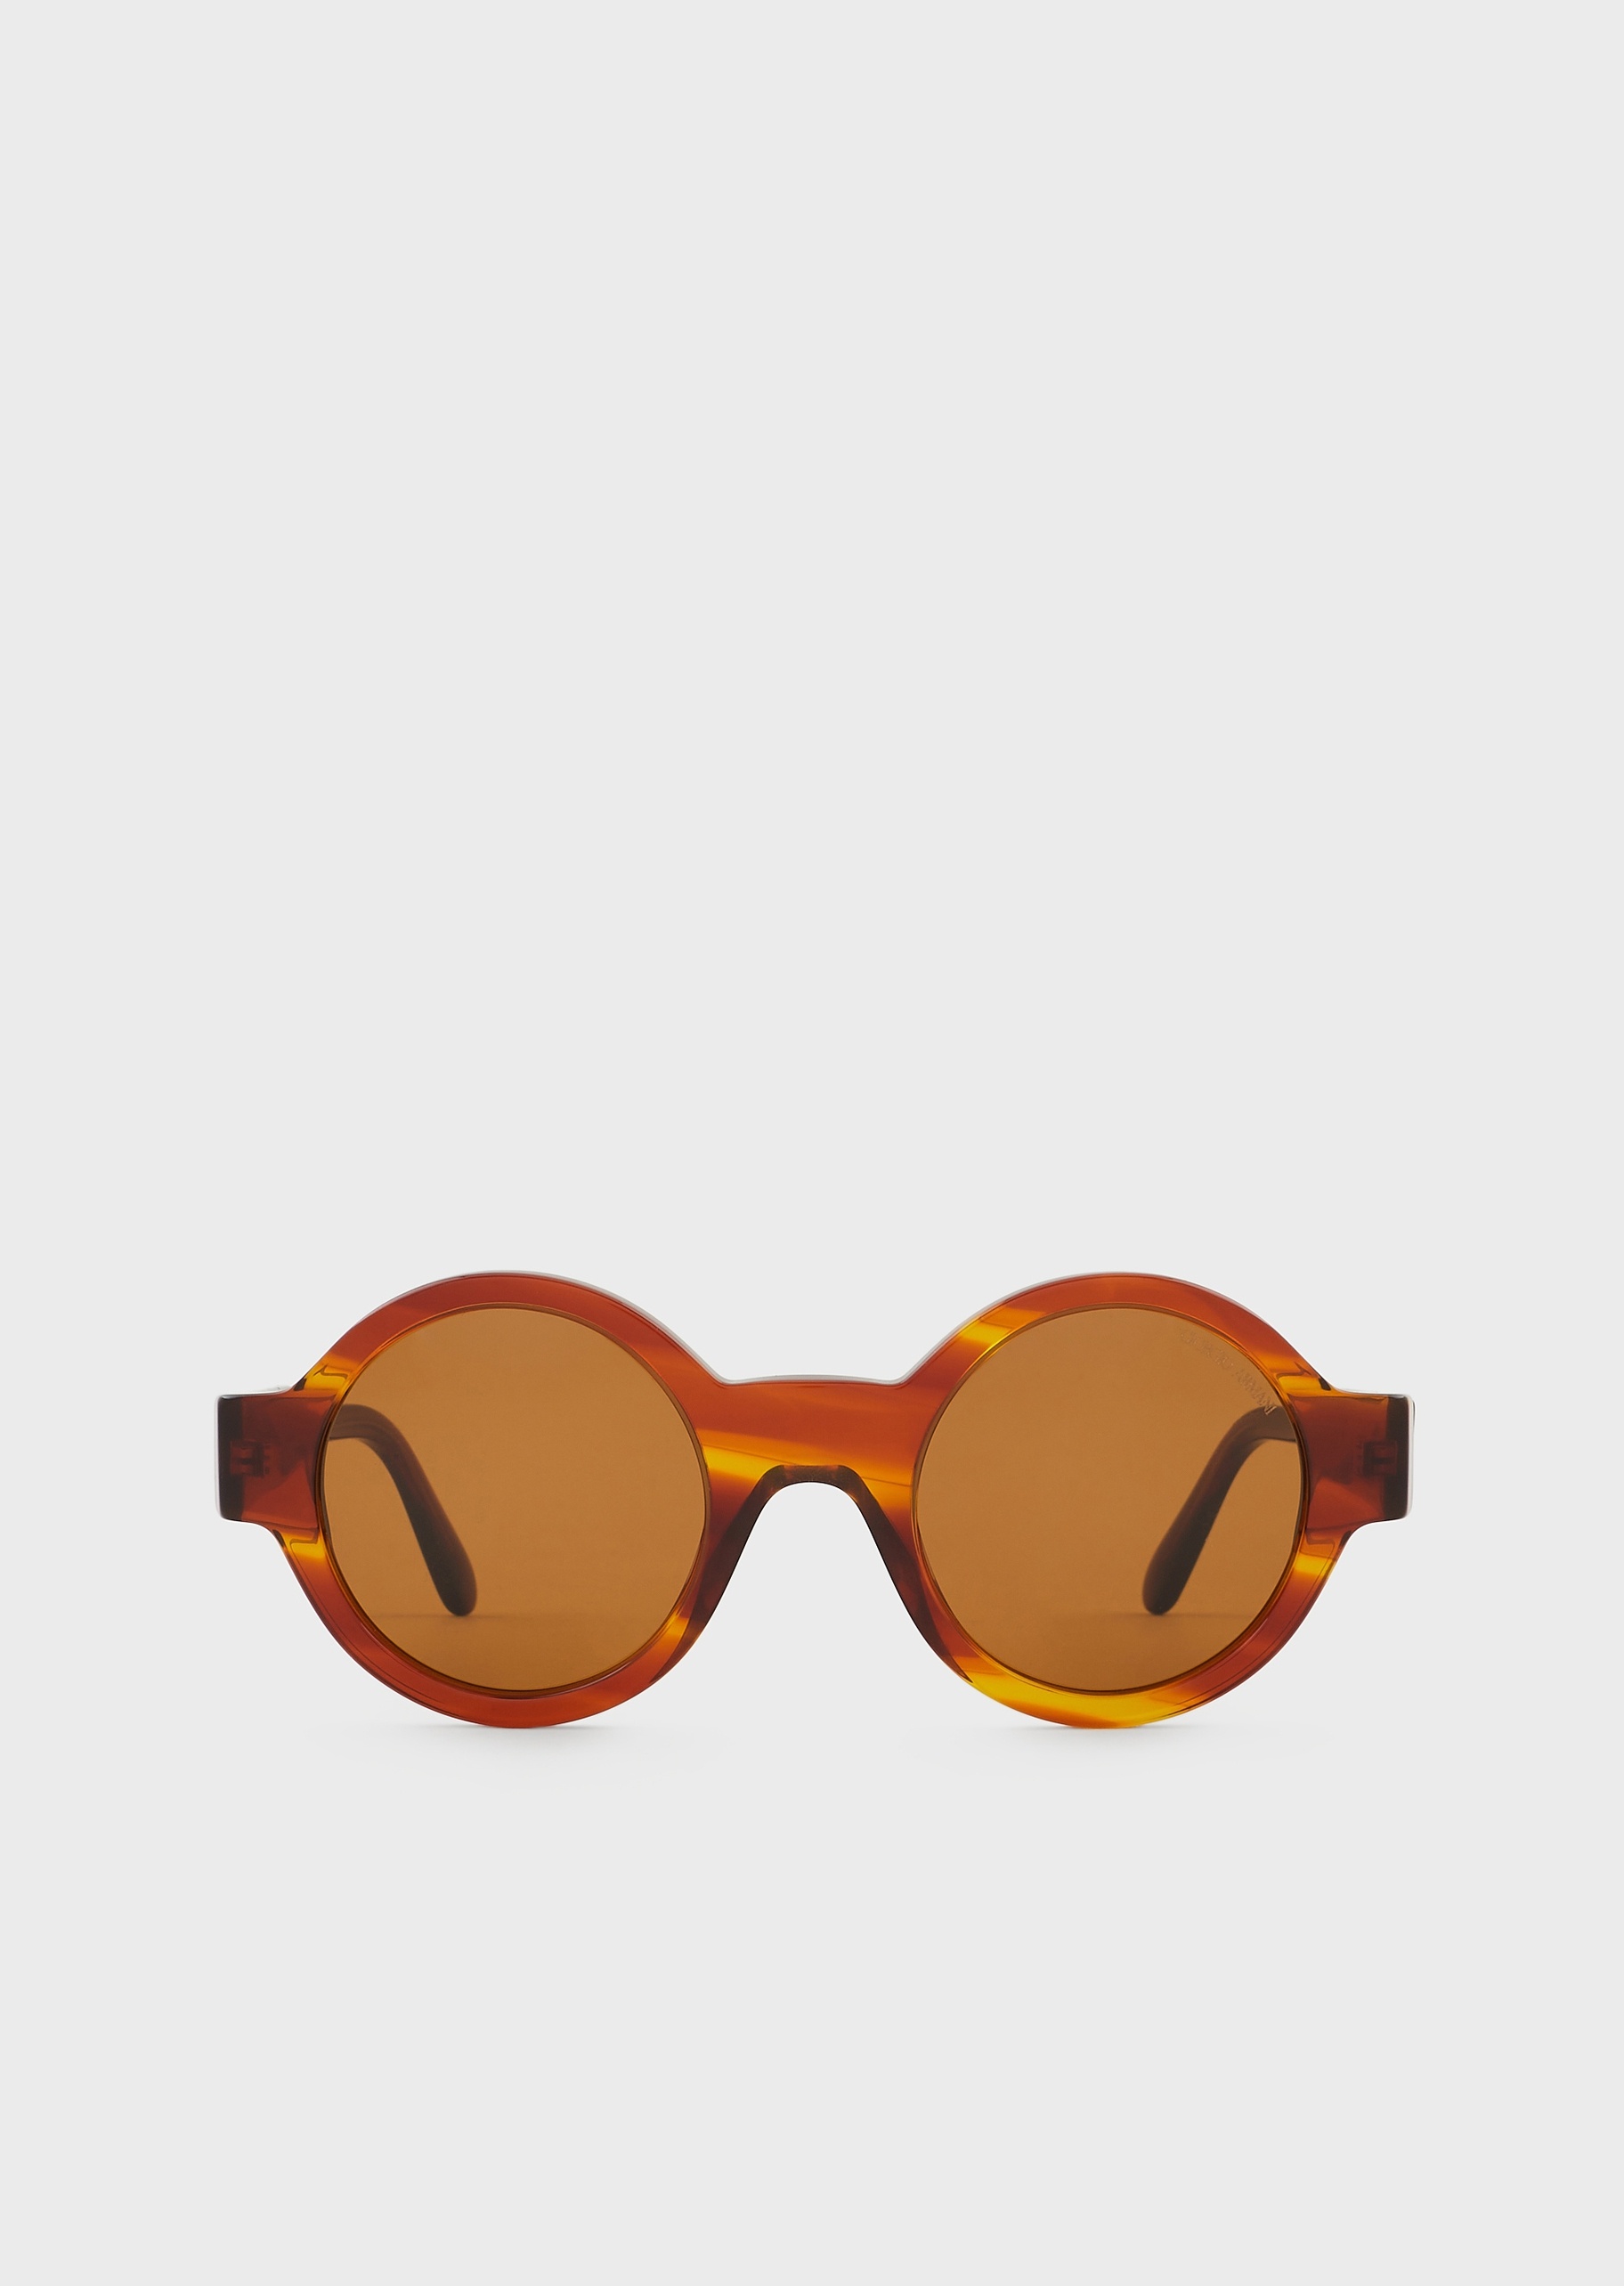 Giorgio Armani 复古棕色新潮太阳眼镜